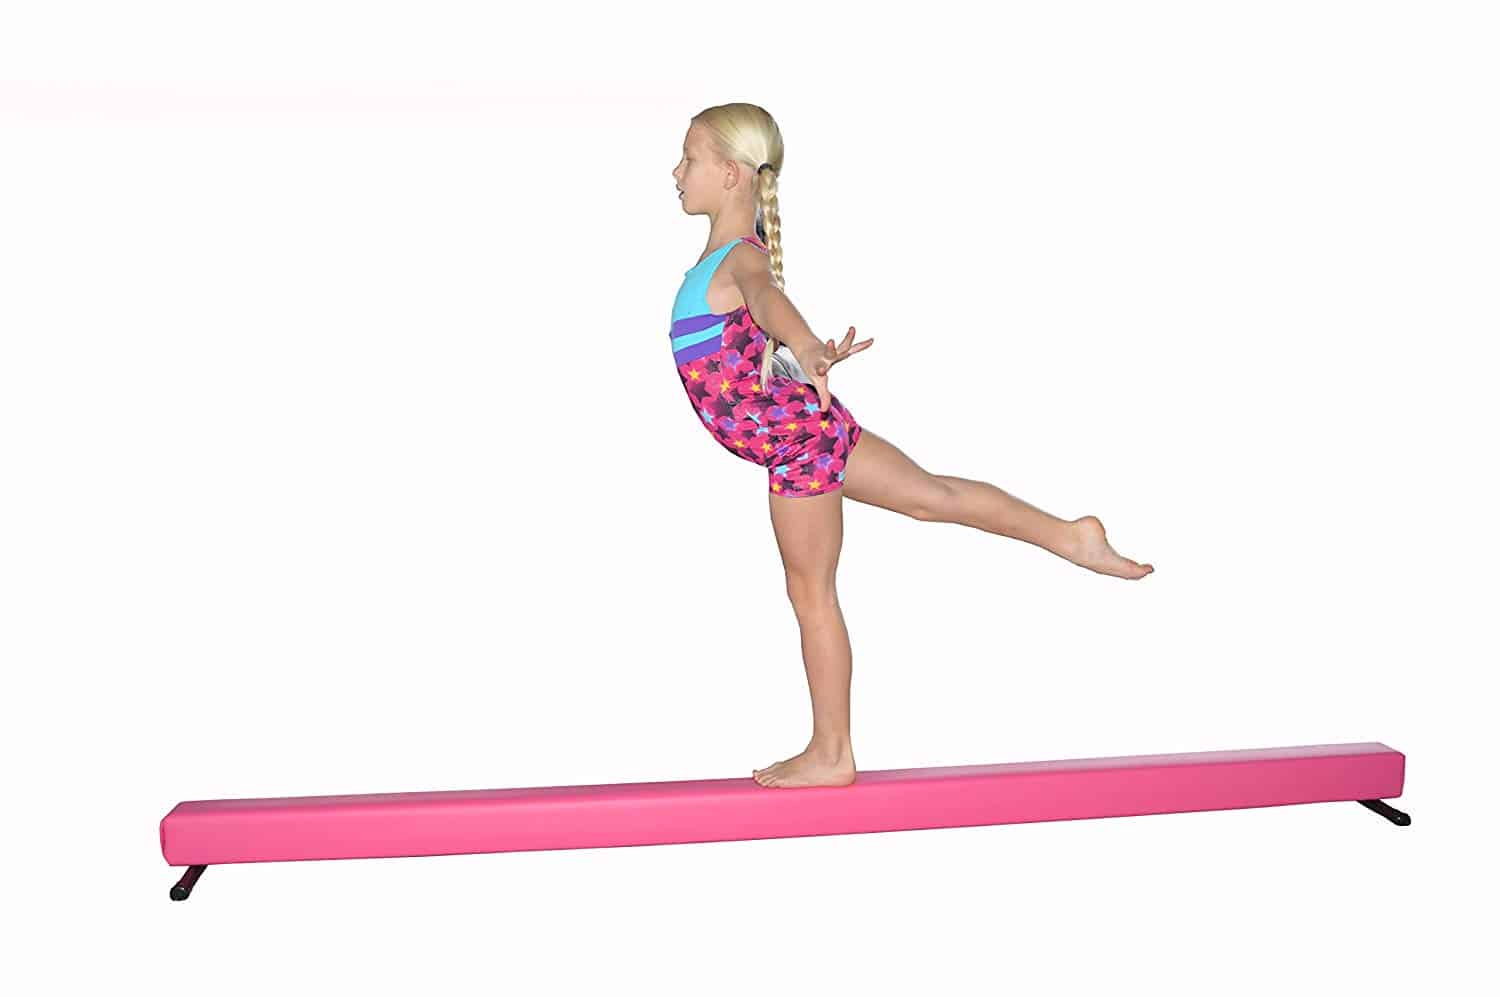 Home Gymnastics Balance Beam